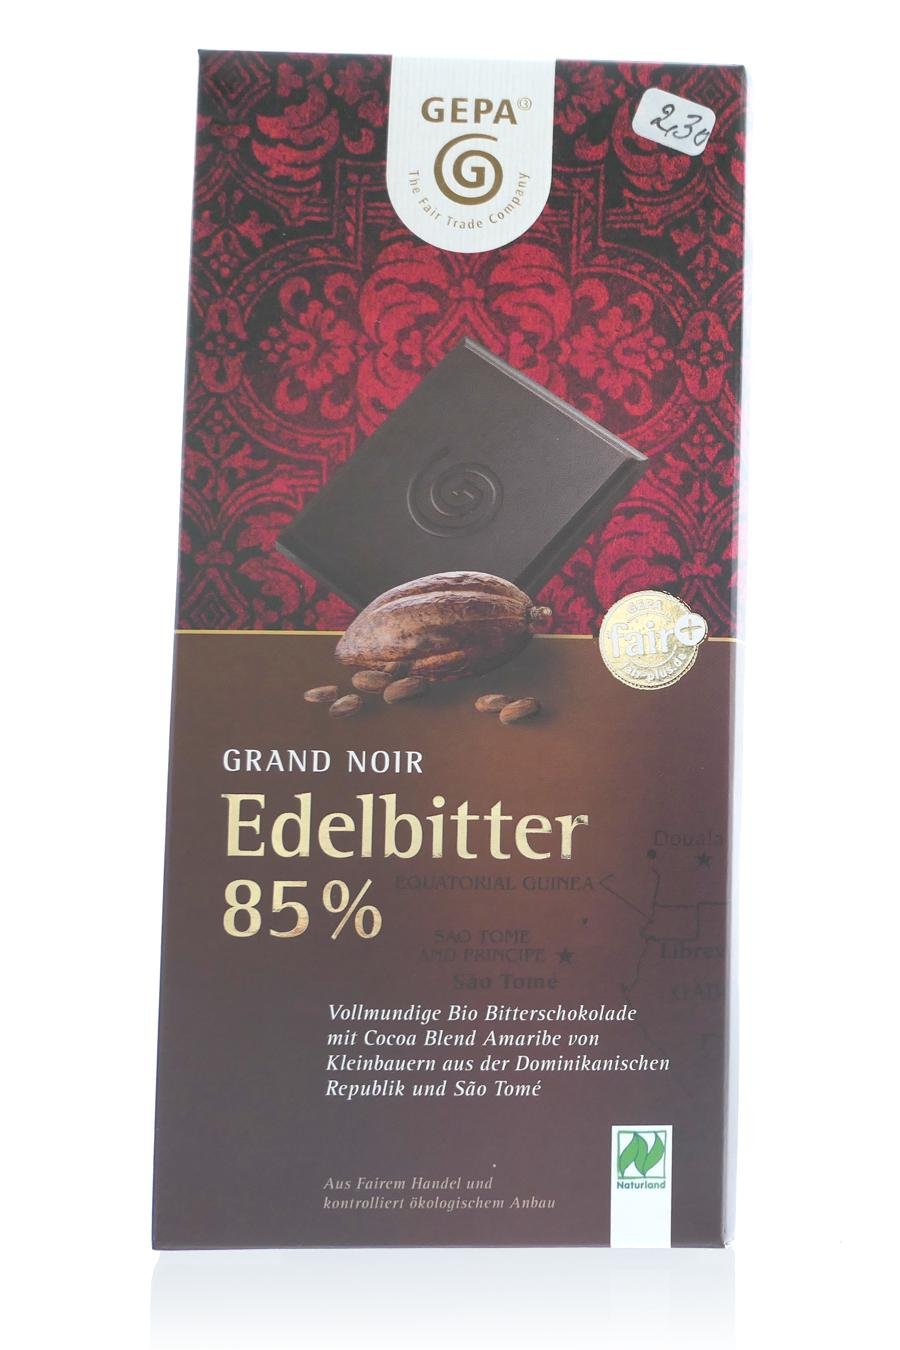 Grand Noir Edelbitter 85% (c) M. Kerk